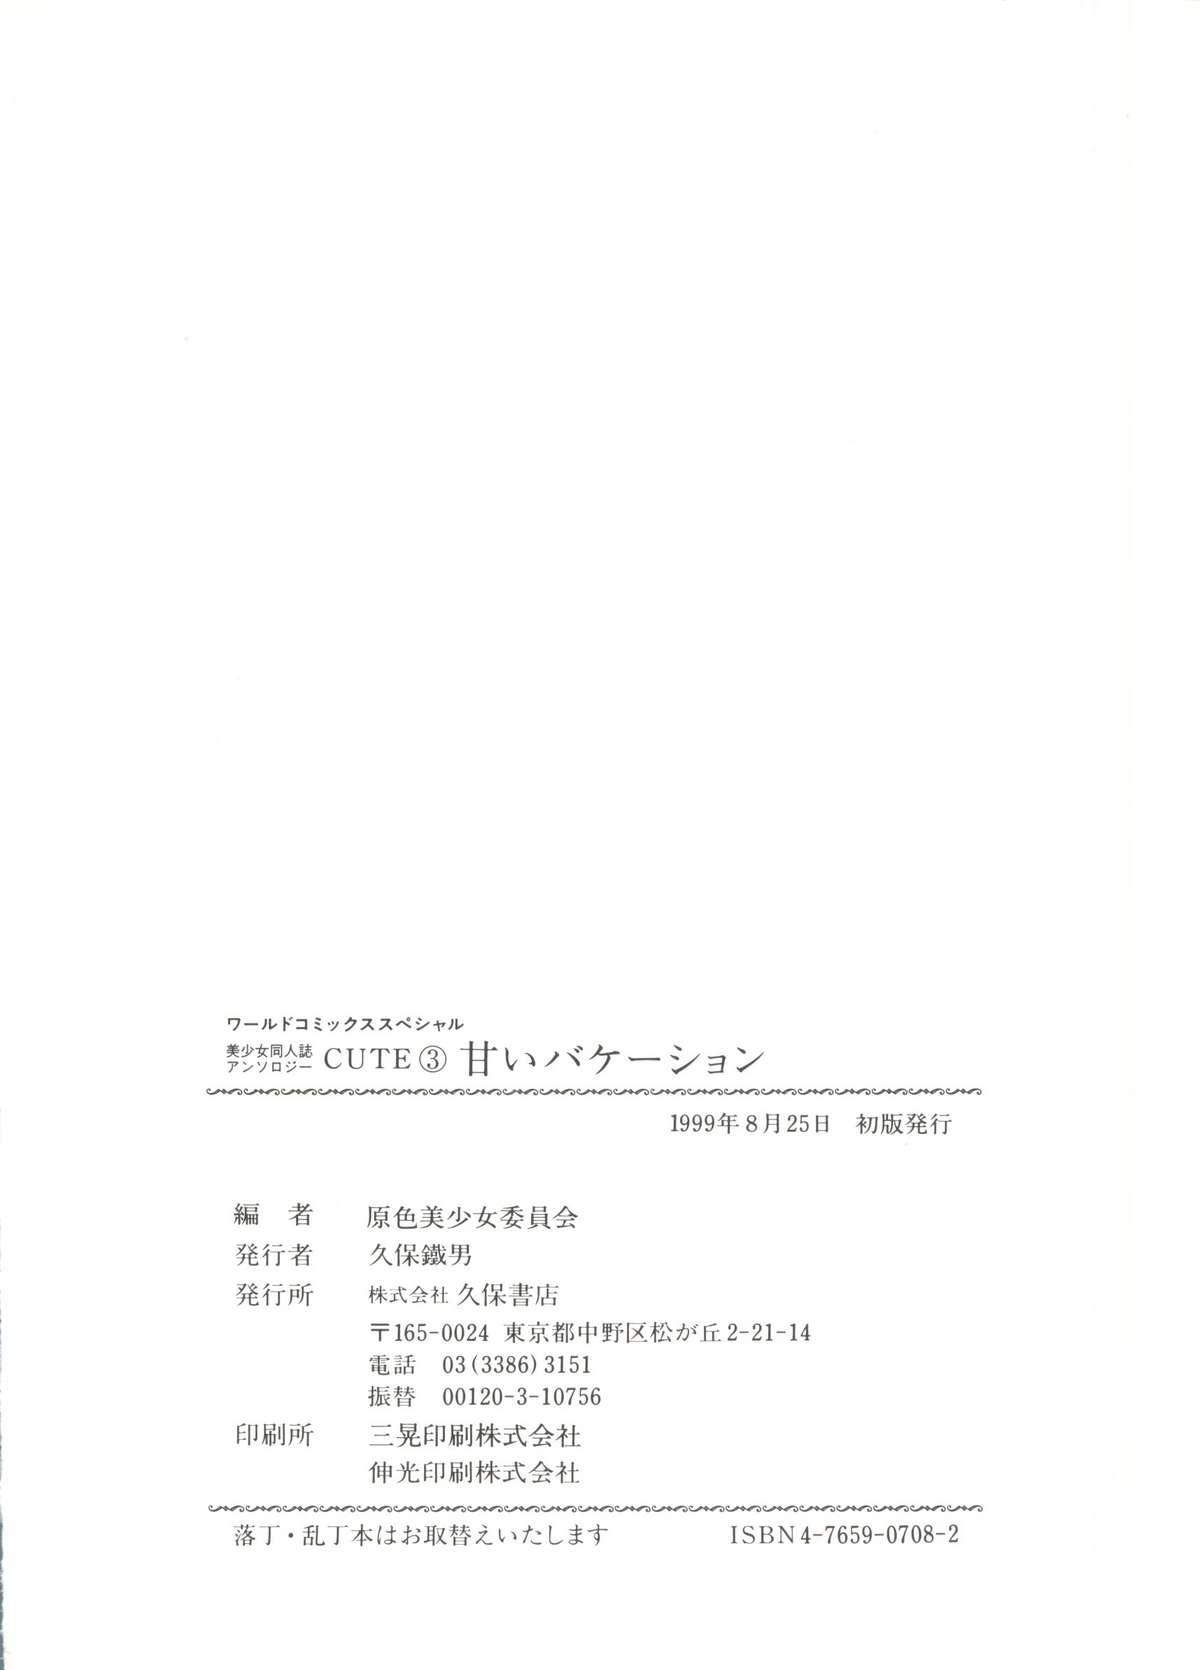 Bishoujo Doujinshi Anthology Cute 3 145